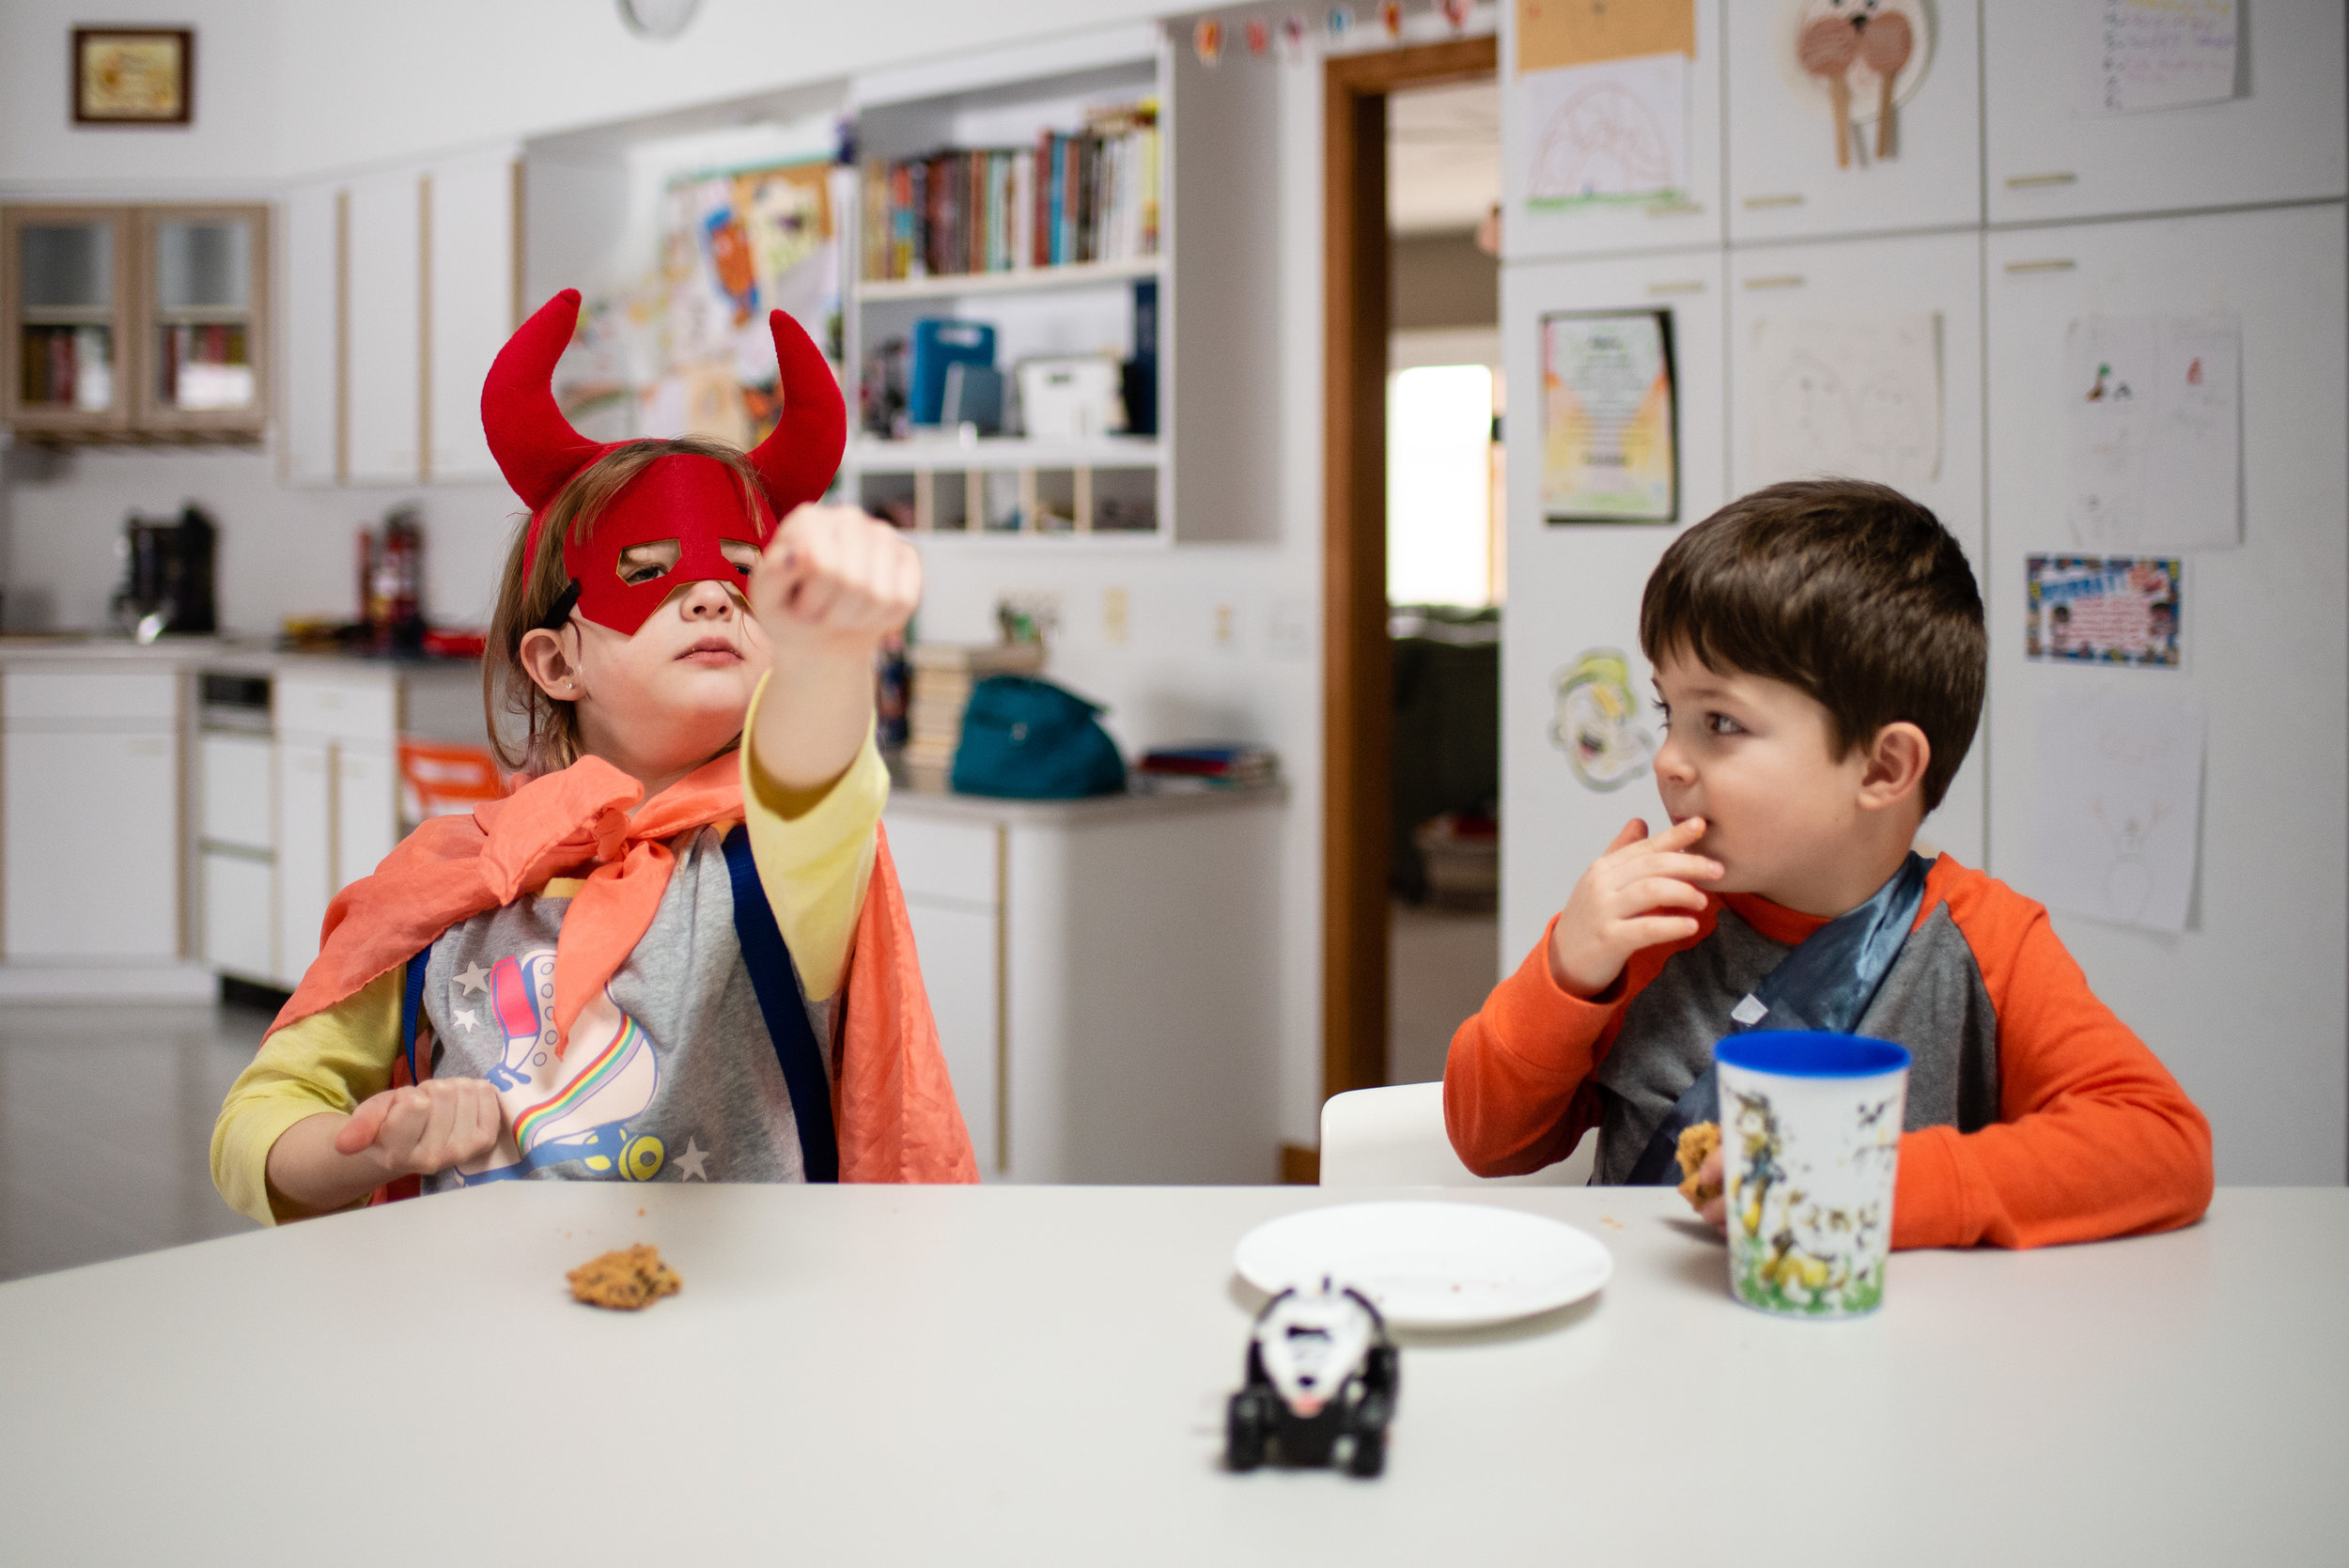 children in costume kitchen counter.jpg